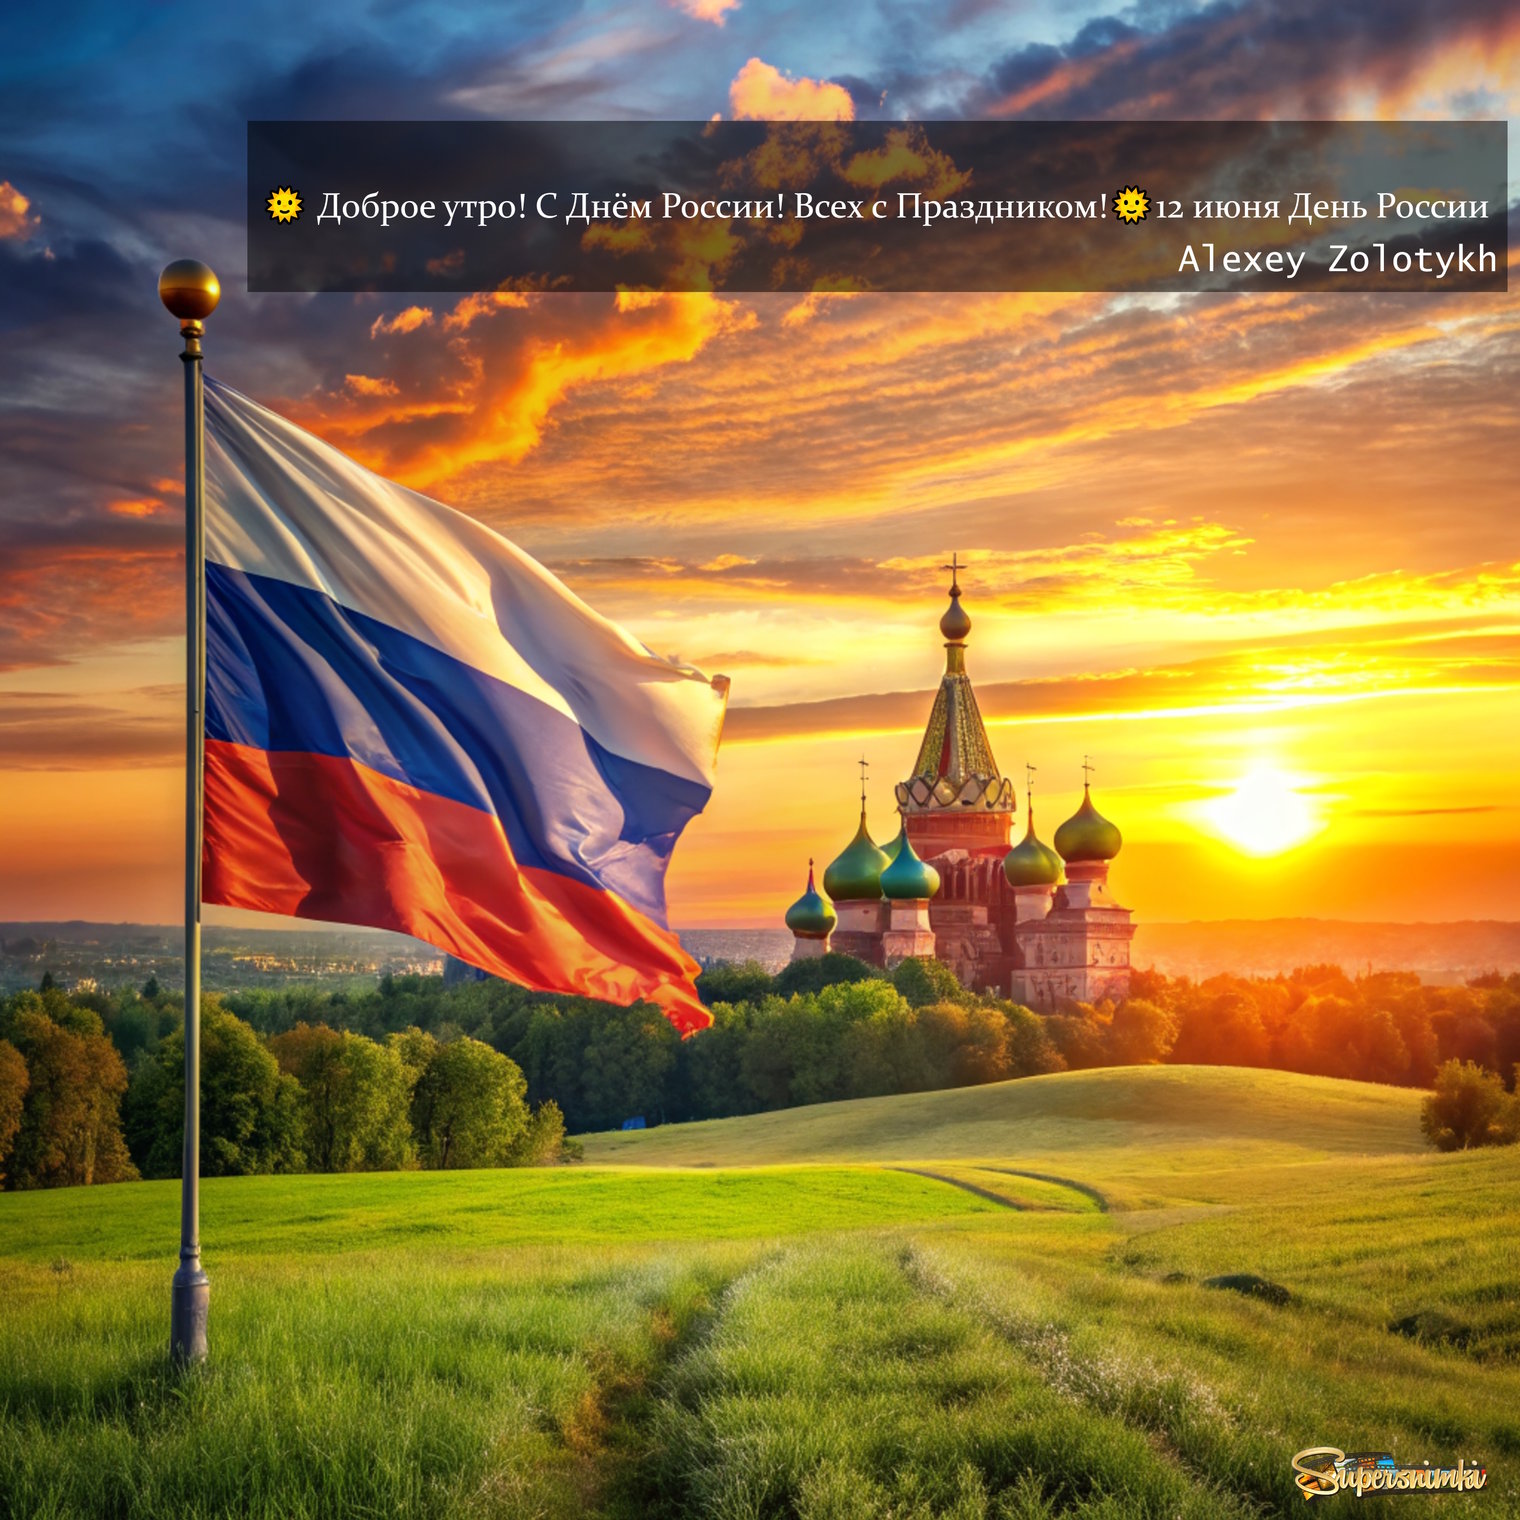 🌞 Доброе утро! С Днём России! Всех с Праздником!🌞12 июня День России